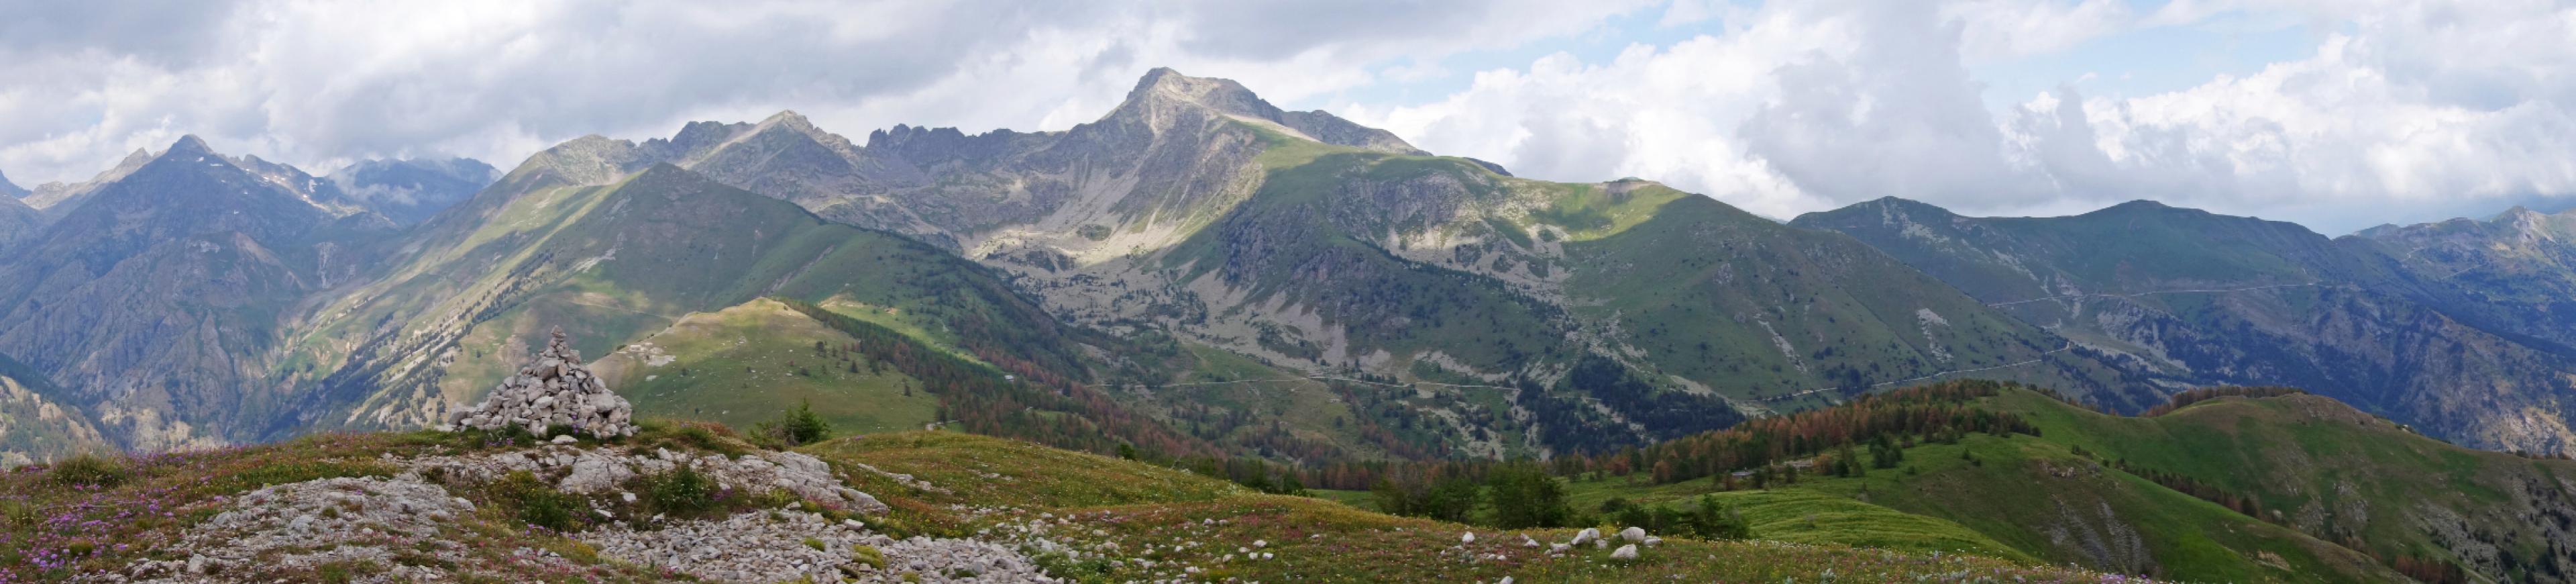 Panorama  eines alpinen Hochgebirges